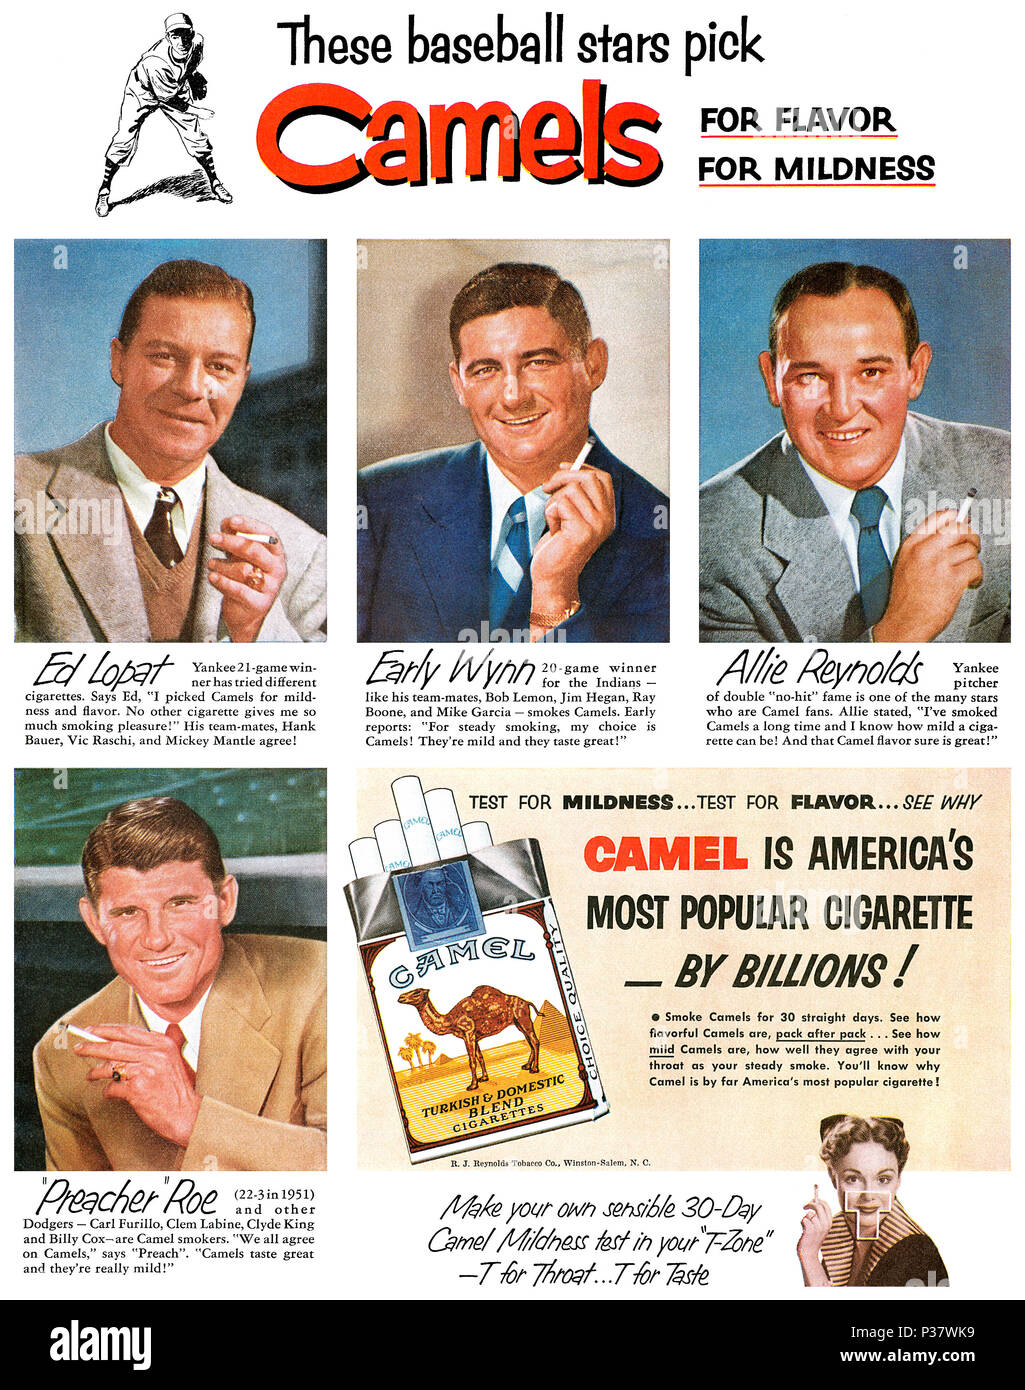 1952 US-Werbung für Zigaretten Camel, mit Baseball Stars Ed Lopat, frühe Wynn, Allie Reynolds und 'Prediger' Roe. Stockfoto